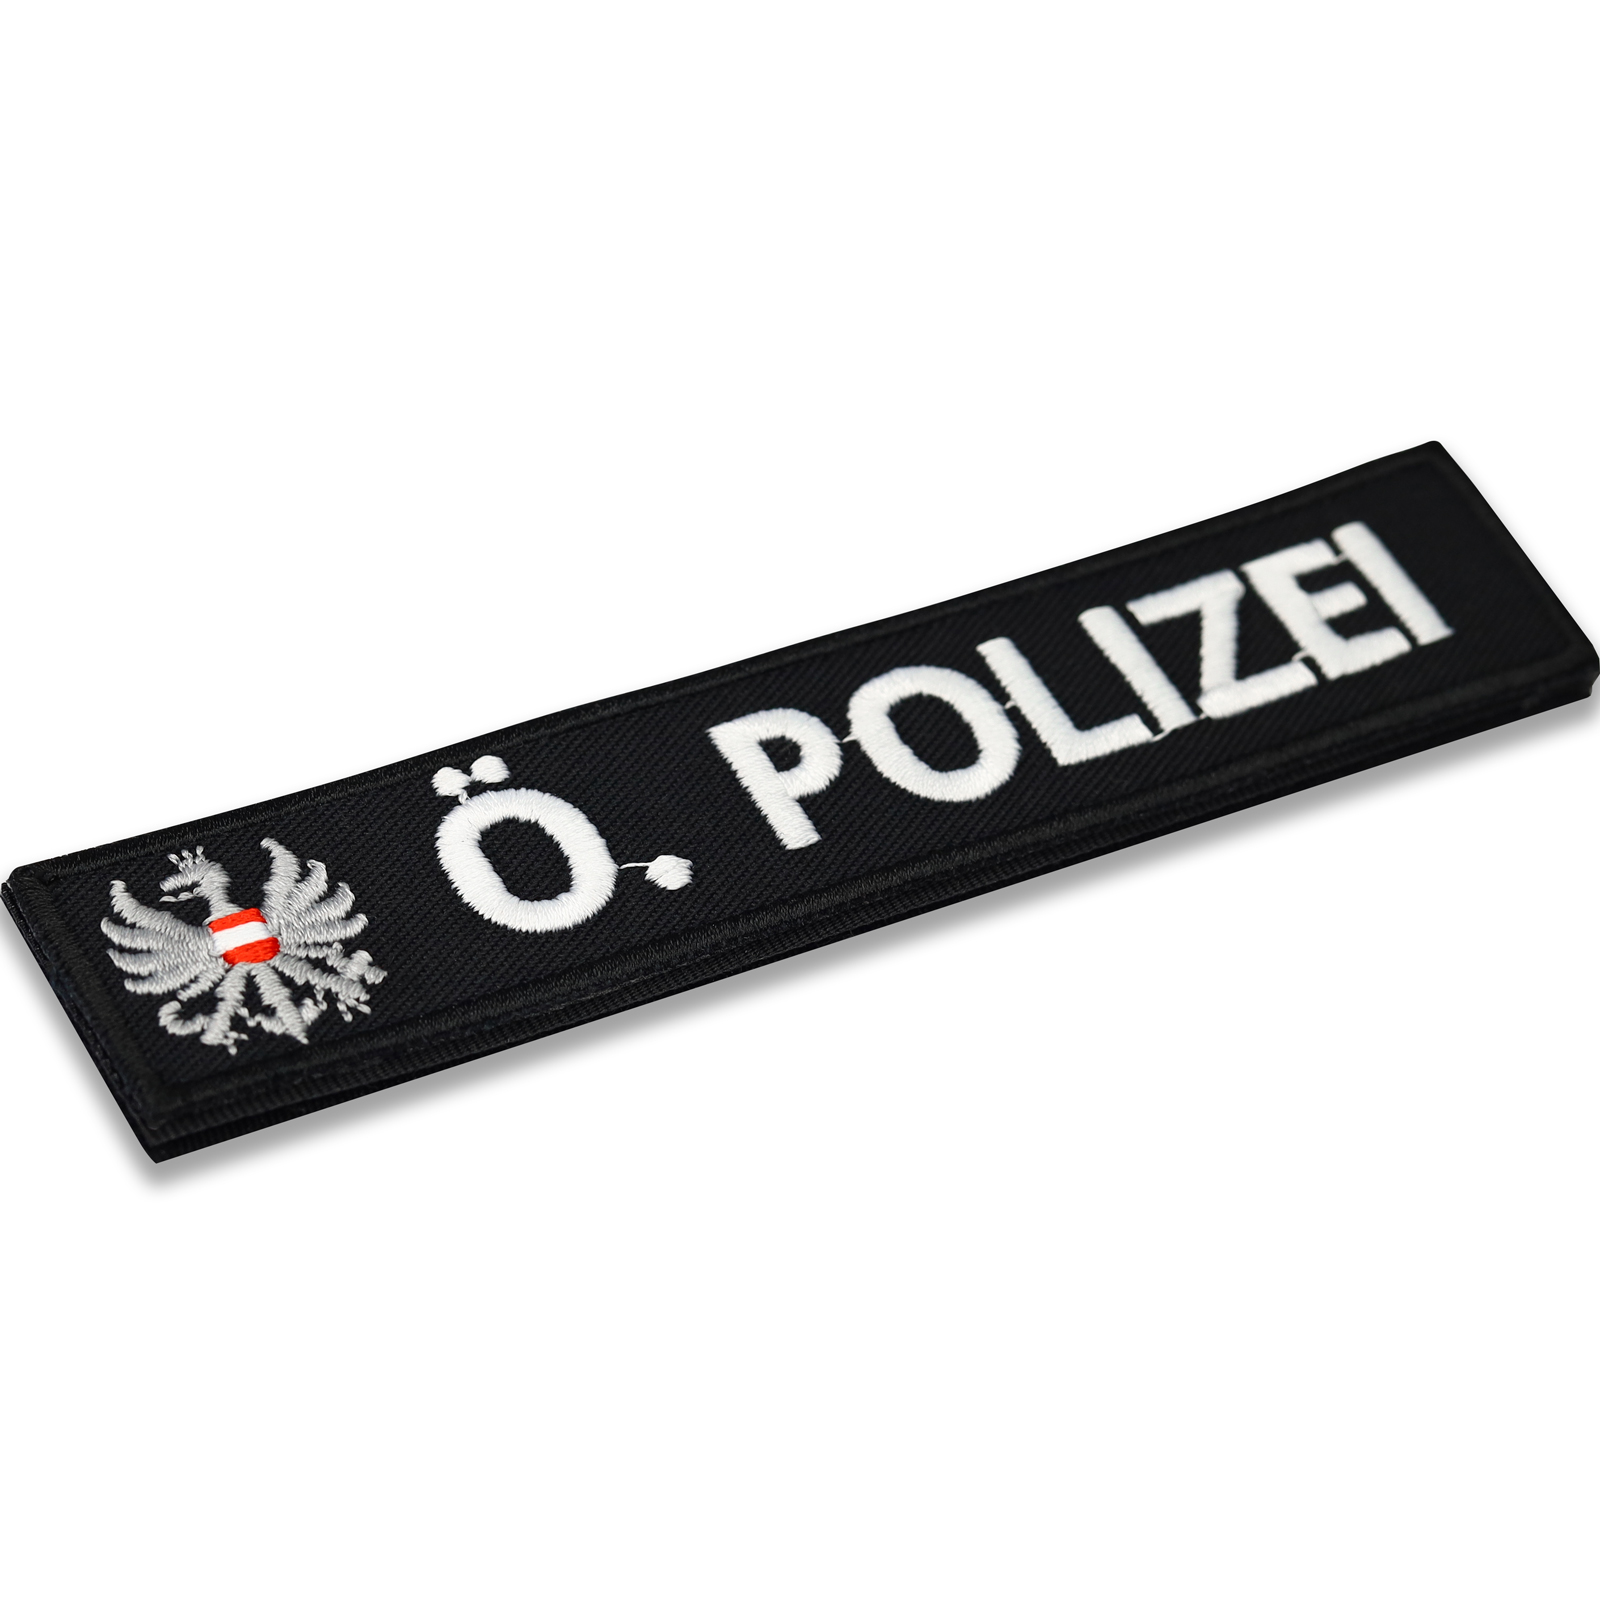 Österreichische Polizei - Patch